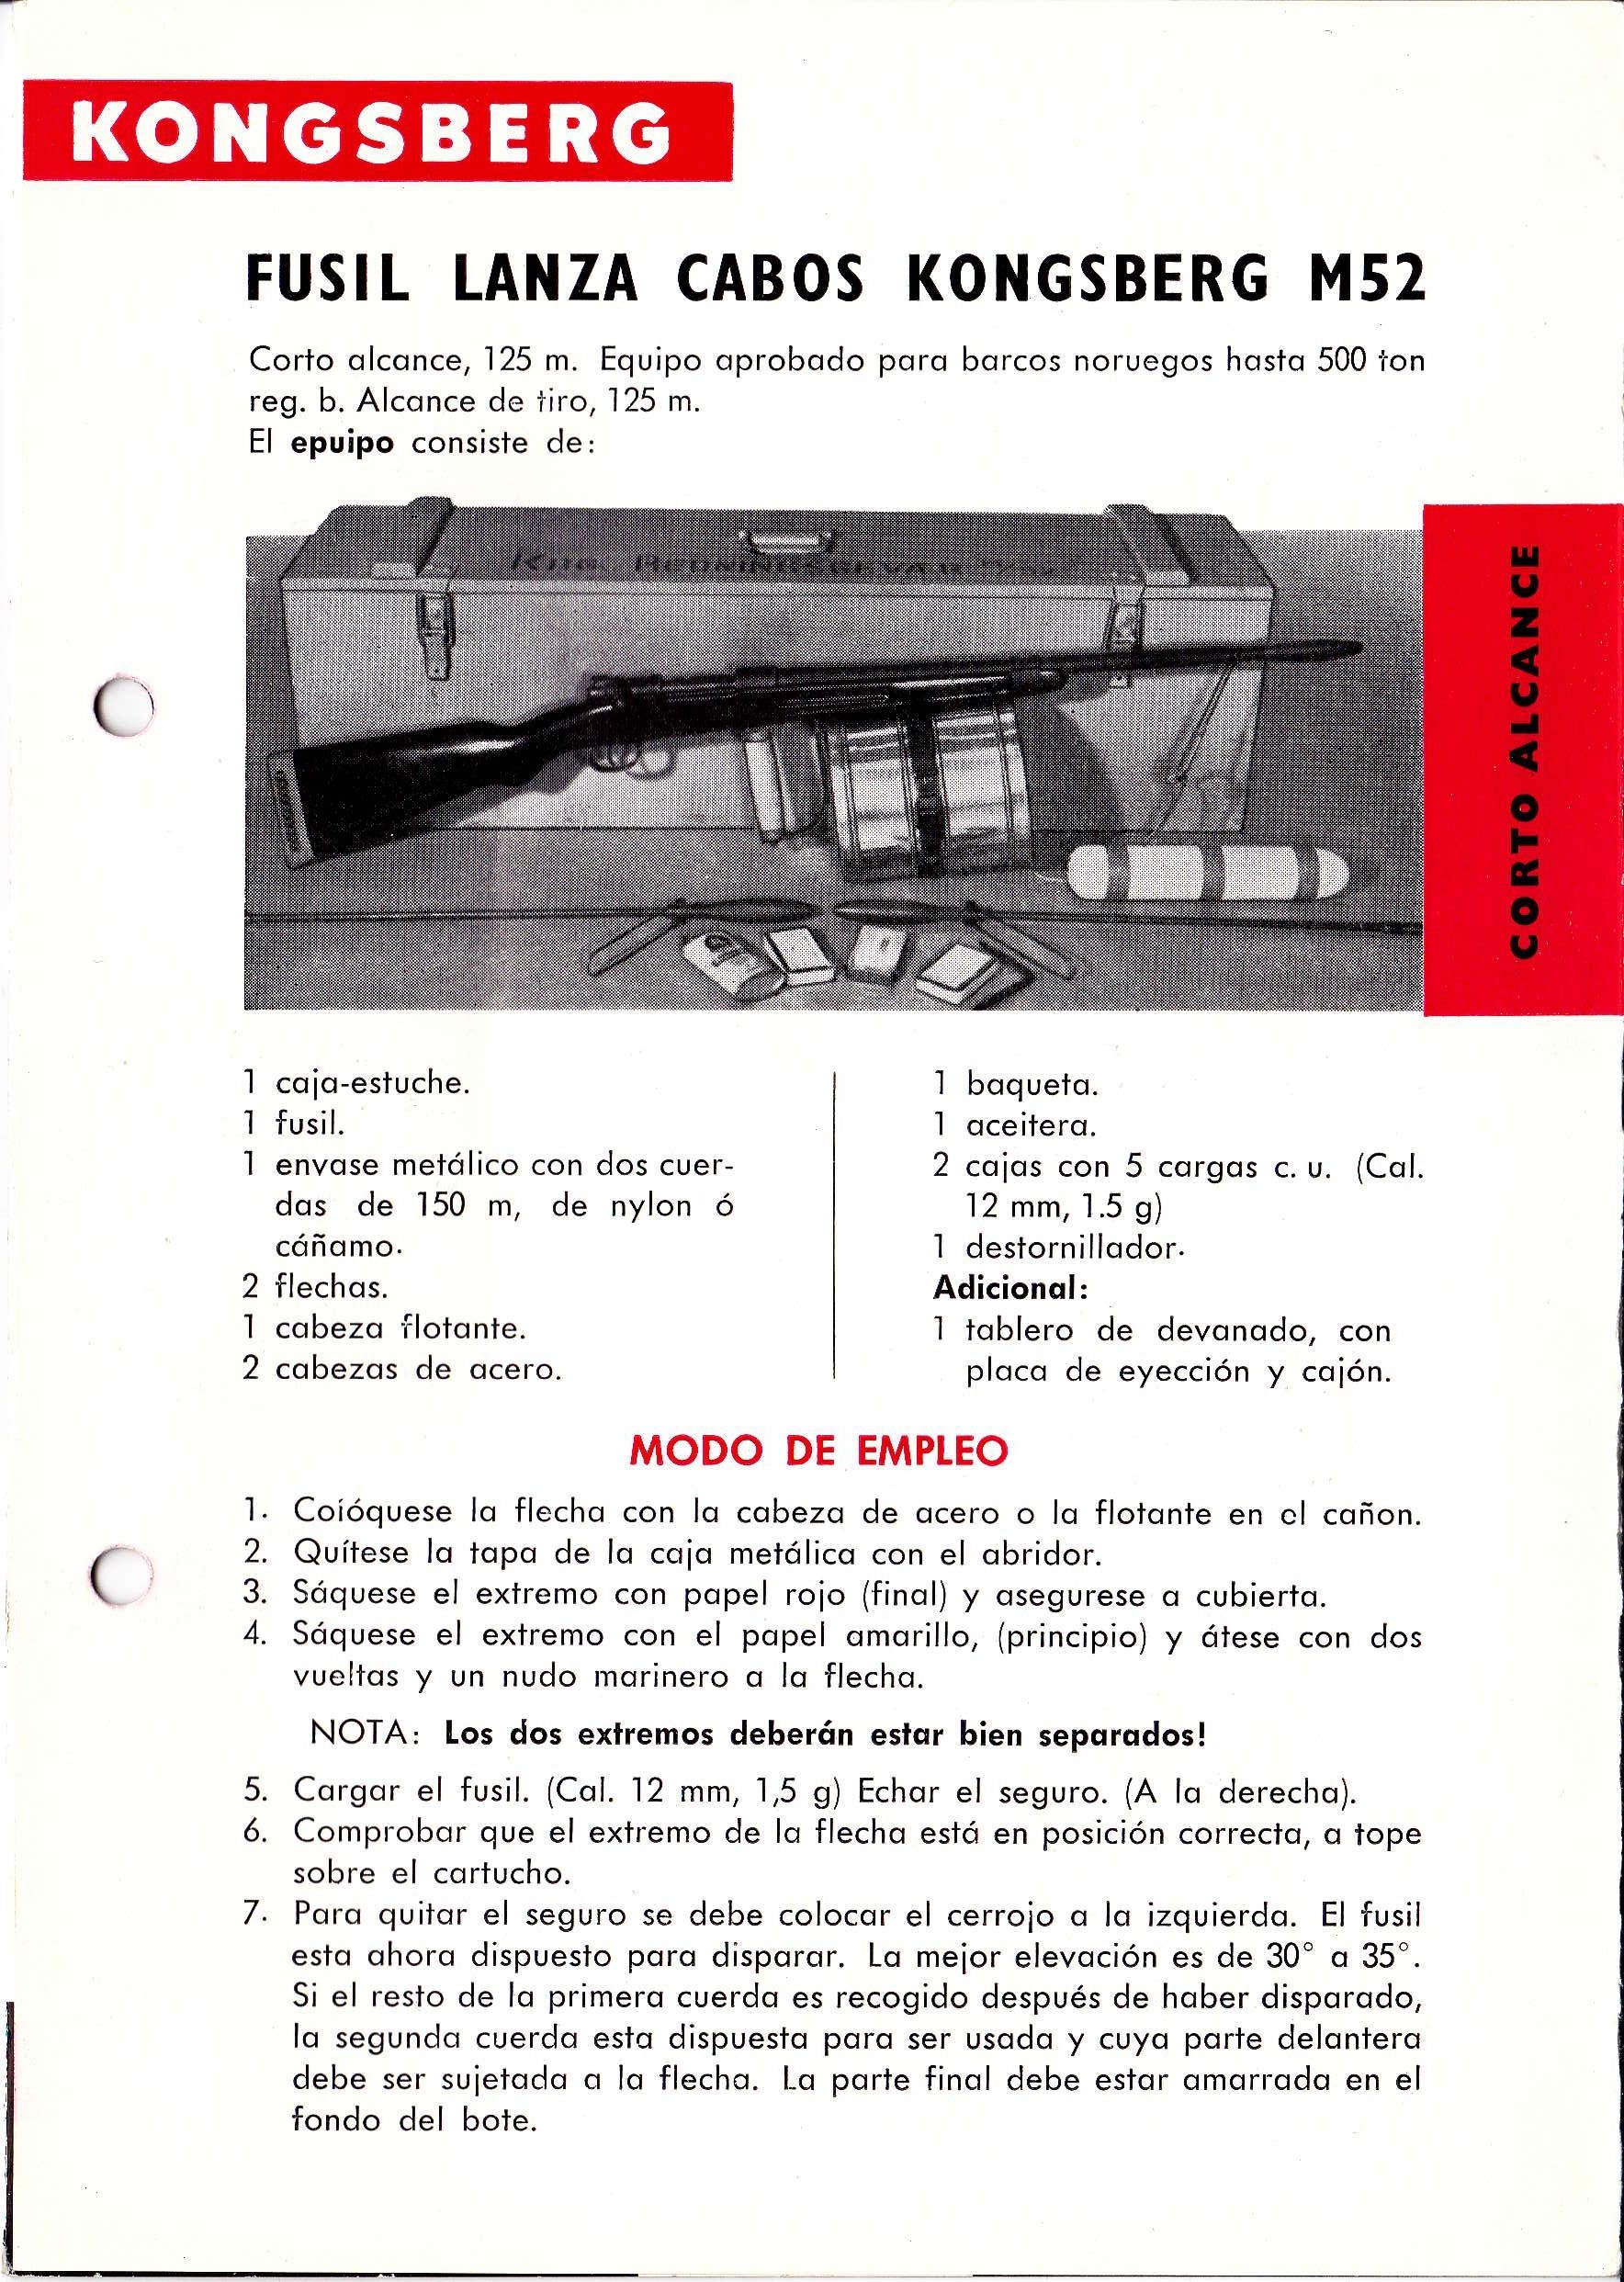 ./../guns/fangst/bilder/Fangst-Kongsberg-M52-Brosjyre-Spansk-5.jpg